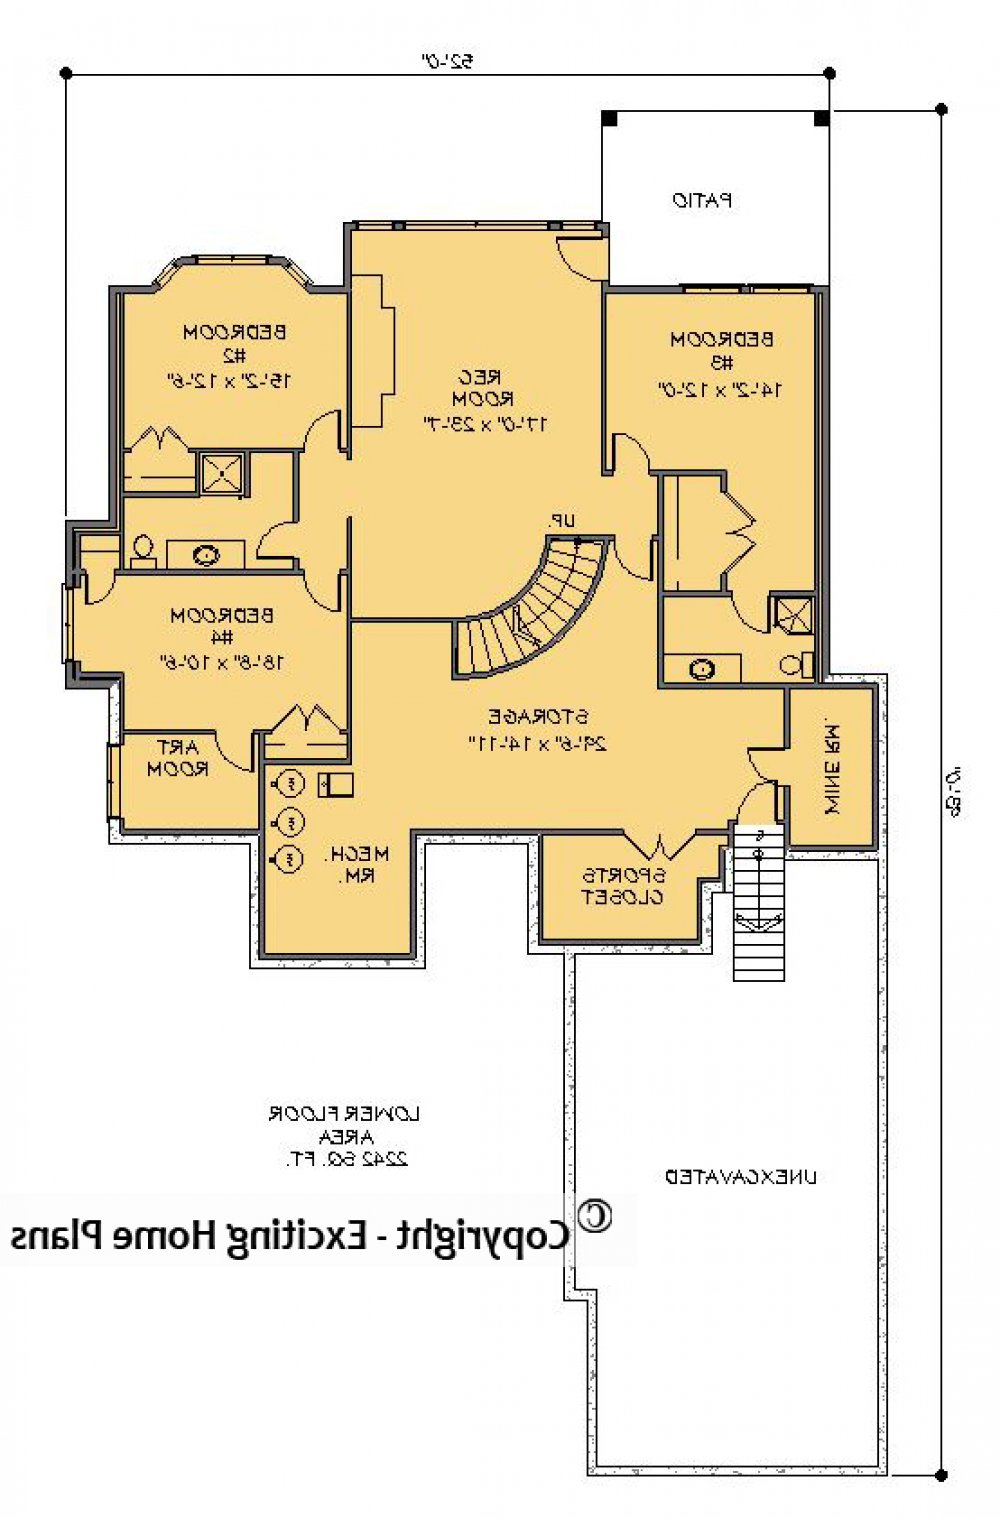 House Plan E1234-10 Lower Floor Plan REVERSE